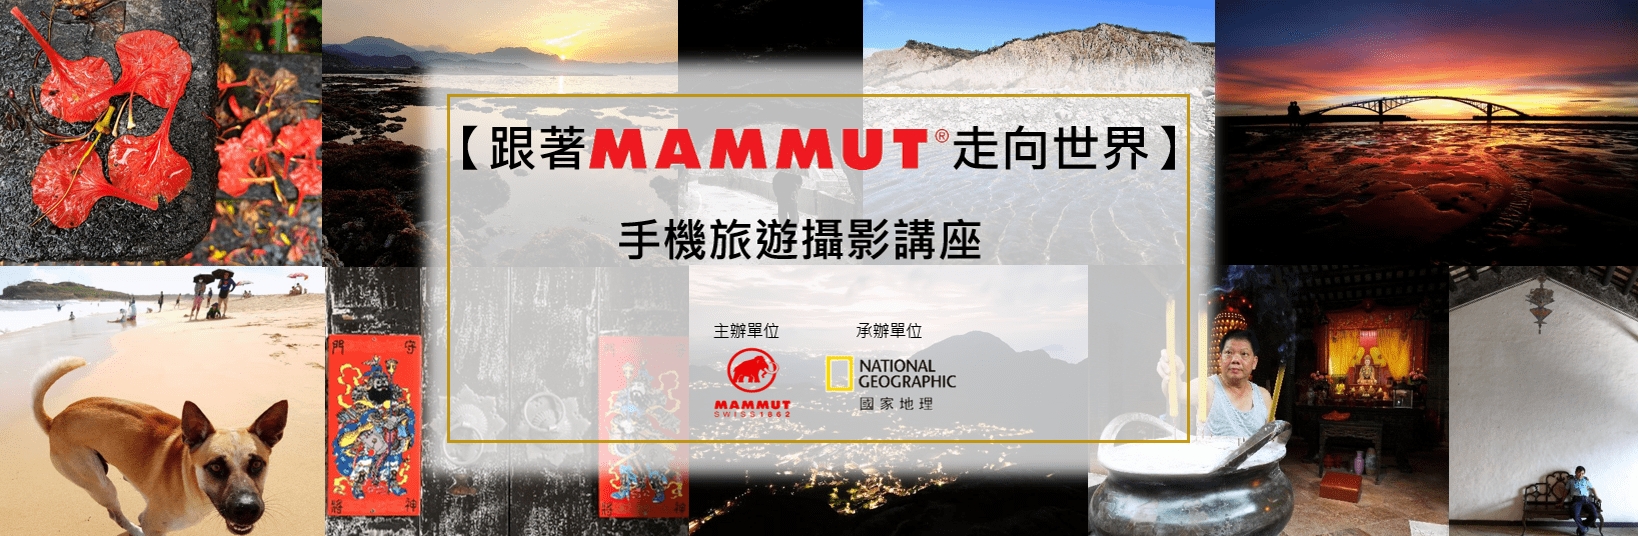 【跟著Mammut走向世界】- 手機旅遊攝影講座